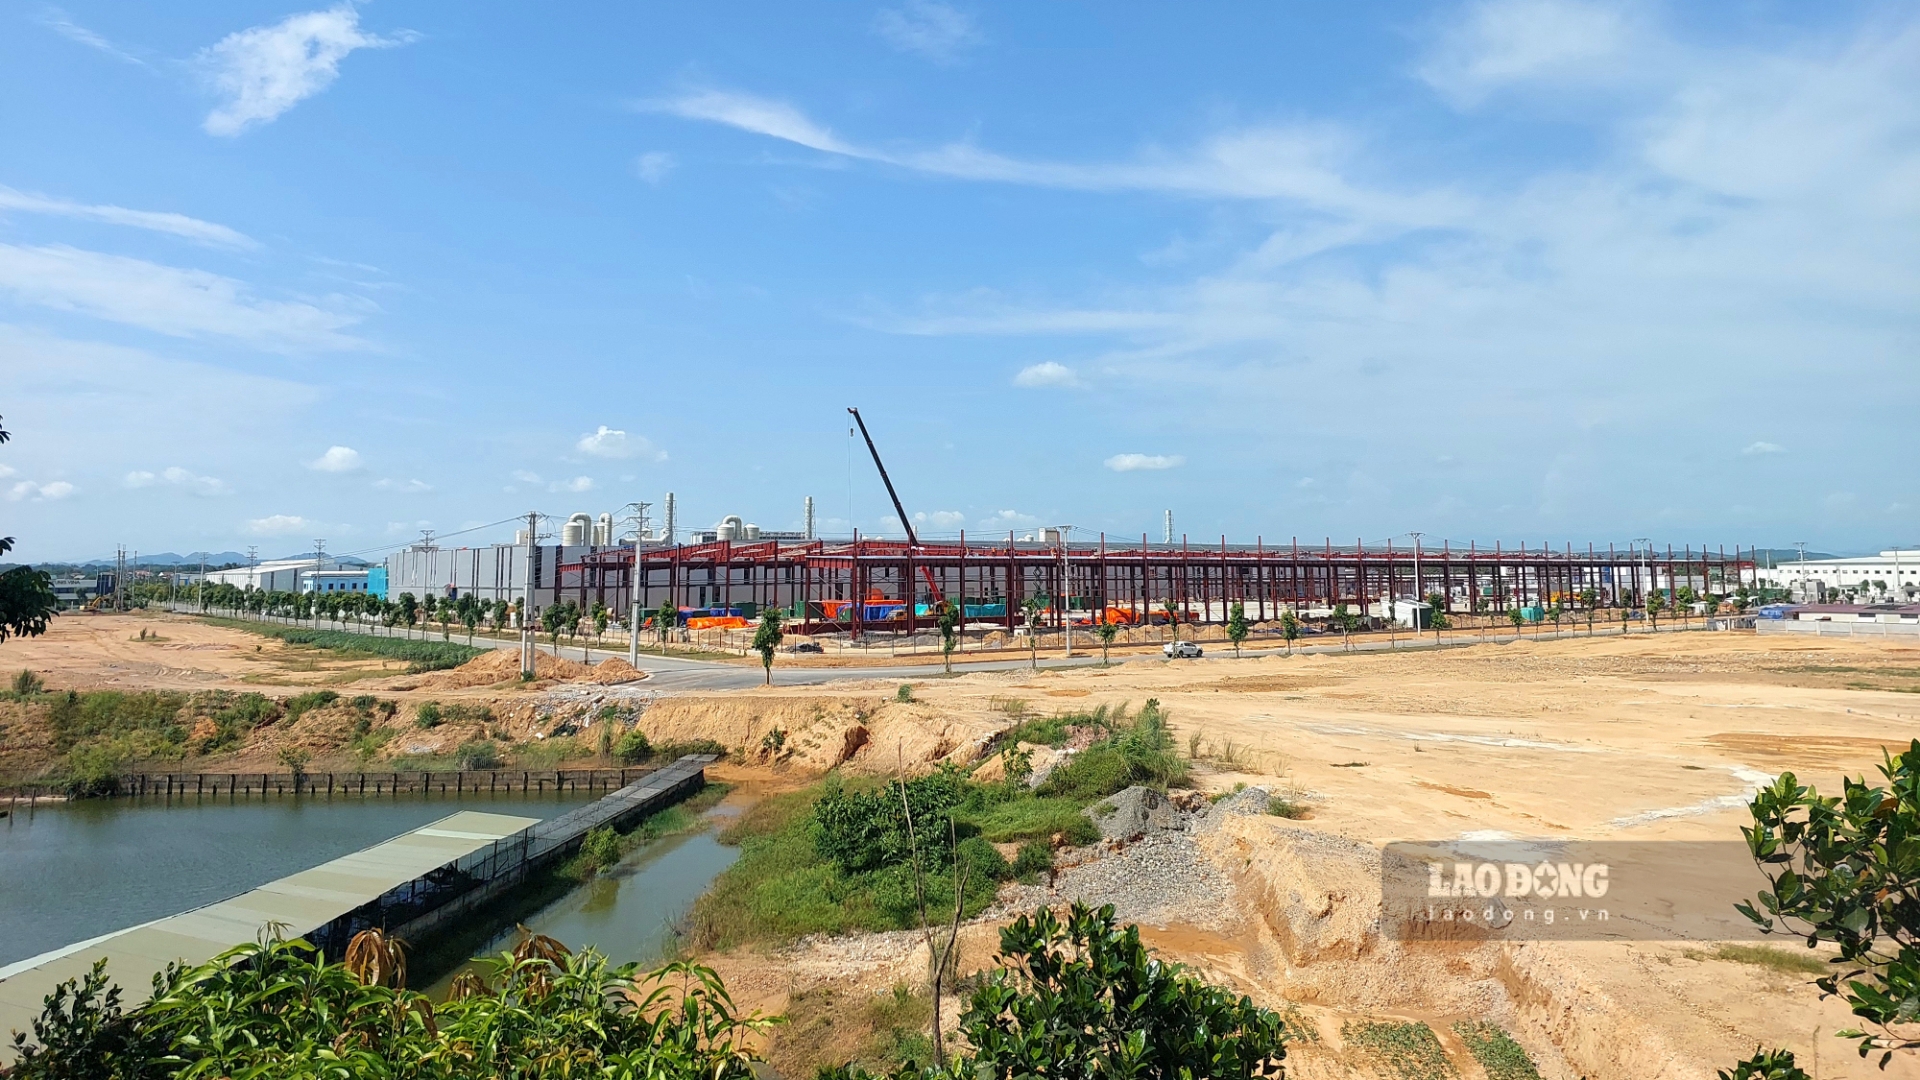 Khu công nghiệp Cẩm Khê (KCN) được Thủ tướng Chính phủ phê duyệt bổ sung vào Quy hoạch phát triển các KCN ở Việt Nam. Ngày 13.5.2016, UBND tỉnh Phú Thọ ban hành Quyết định số 1092/QĐ-UBND về việc thành lập KCN này.